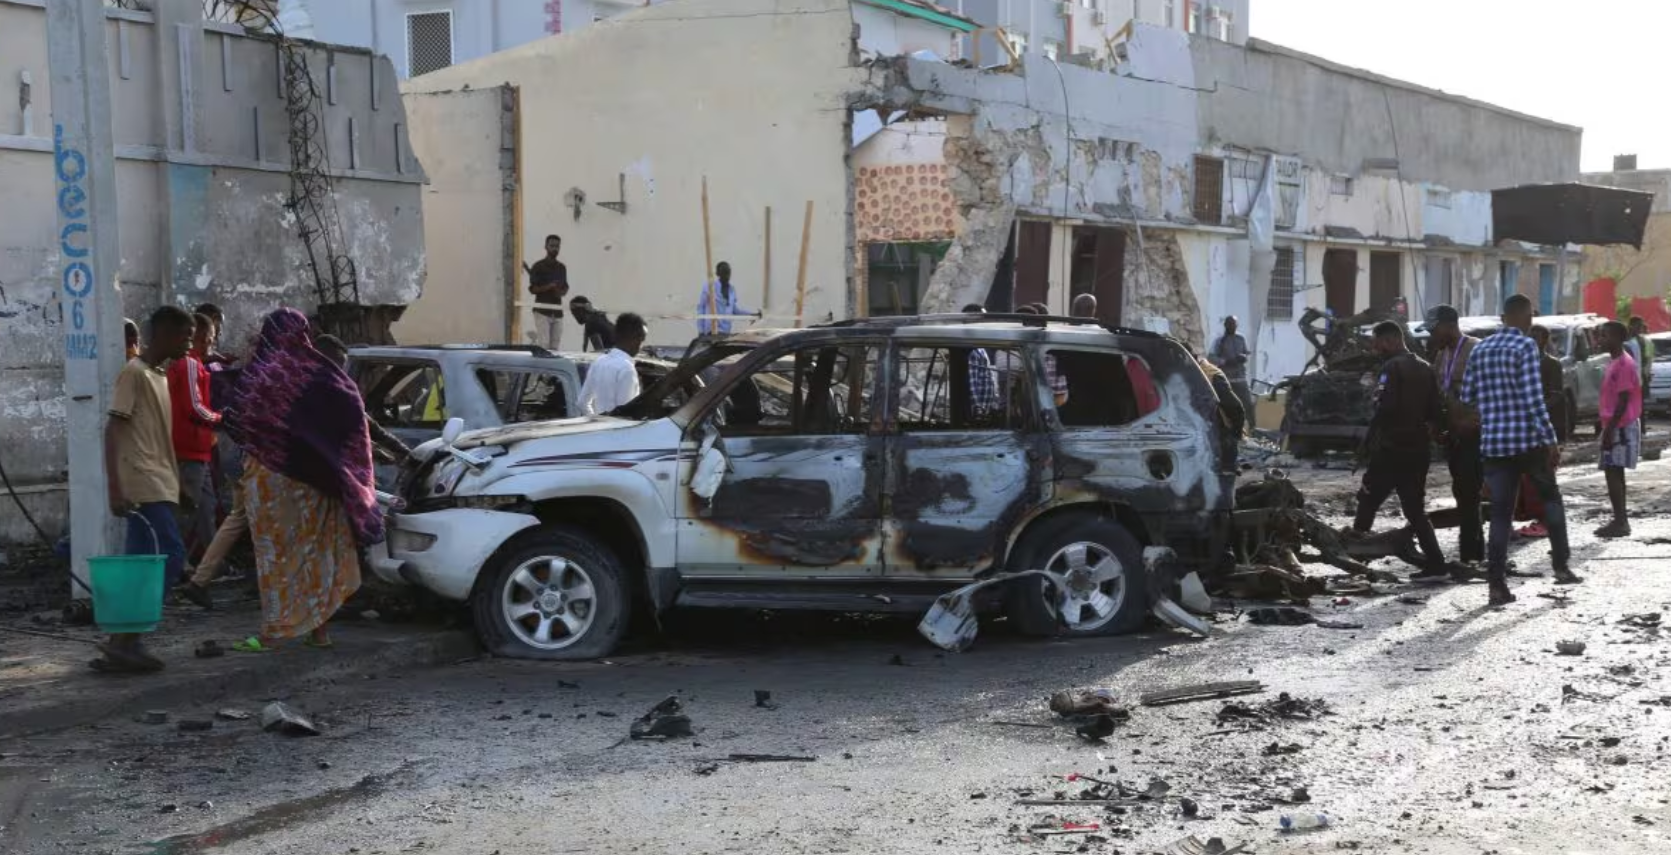 Attentato Somalia finale Europei morti